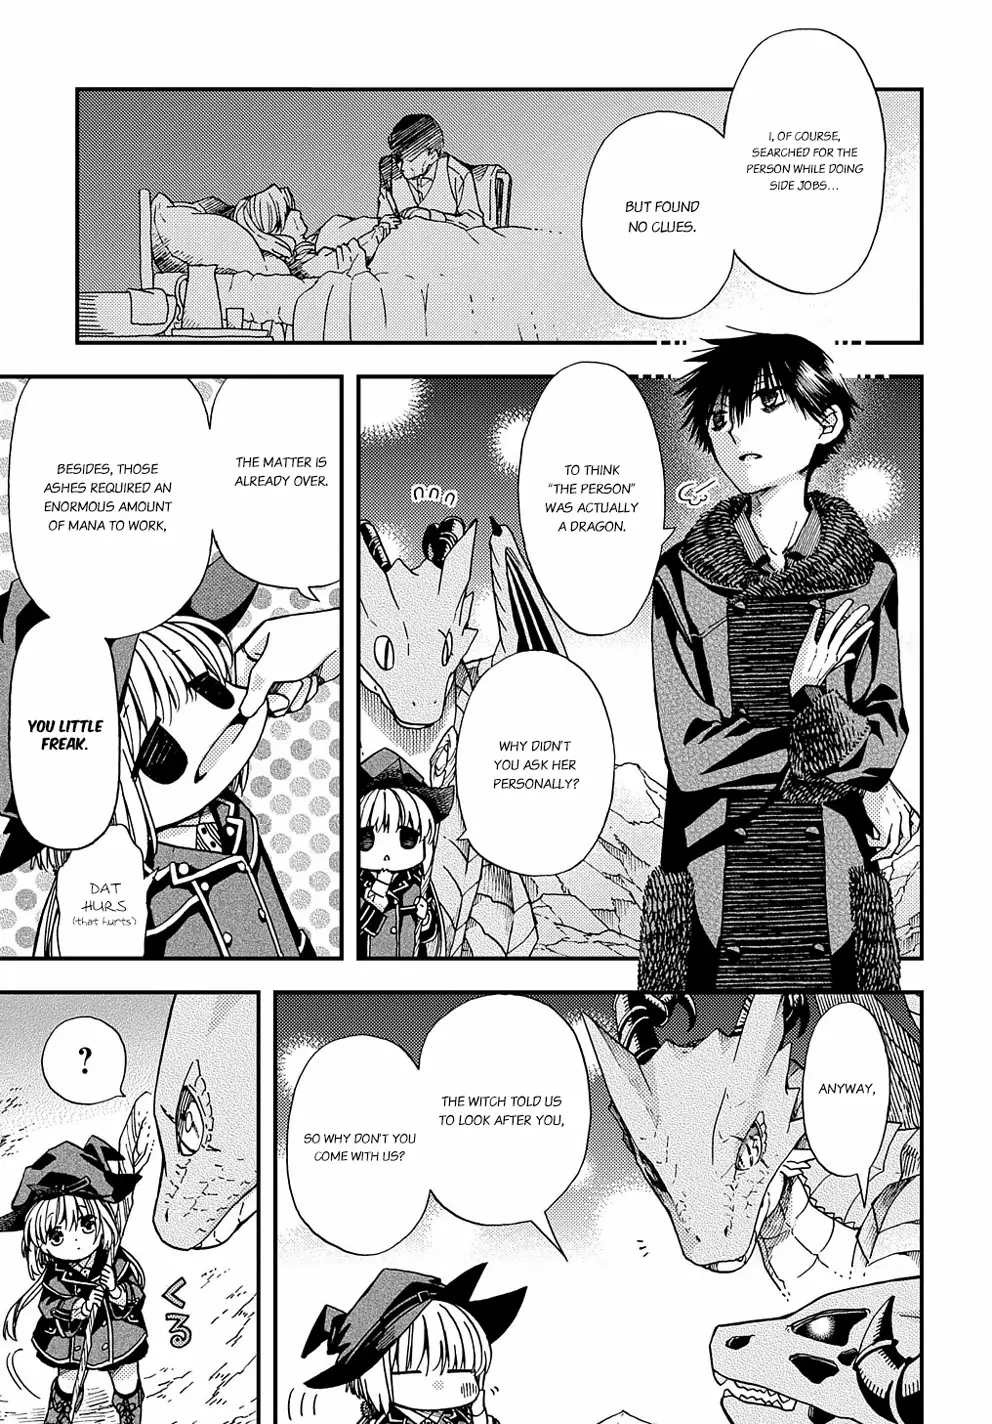 Hone Dragon No Mana Musume - 6 page 26-4de84ebf